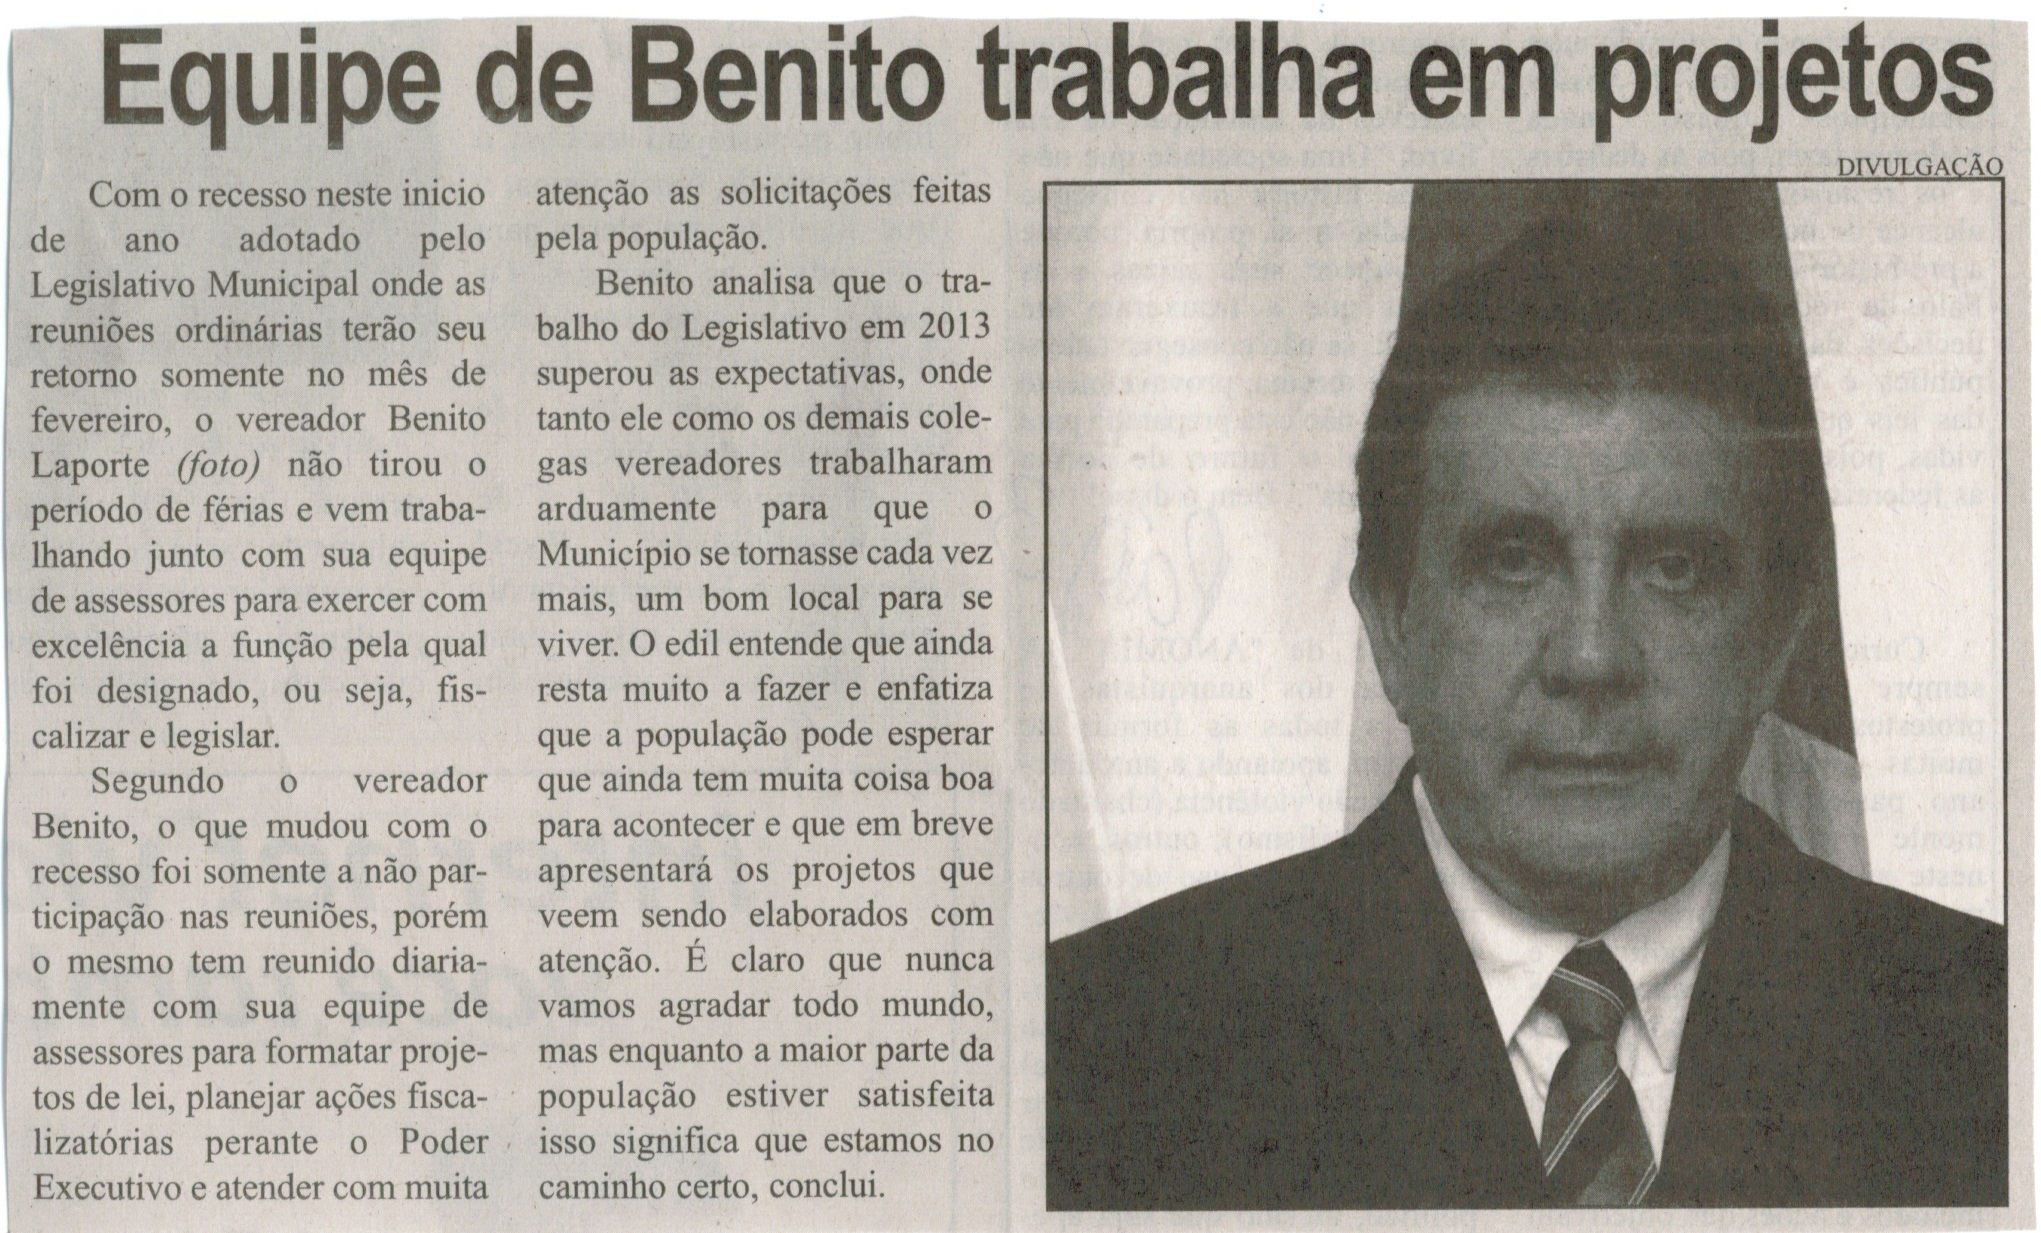 Equipe de Benito trabalha em projetos. Correio de Minas, Conselheiro Lafaiete, 16 jan. 2014, p. 3.